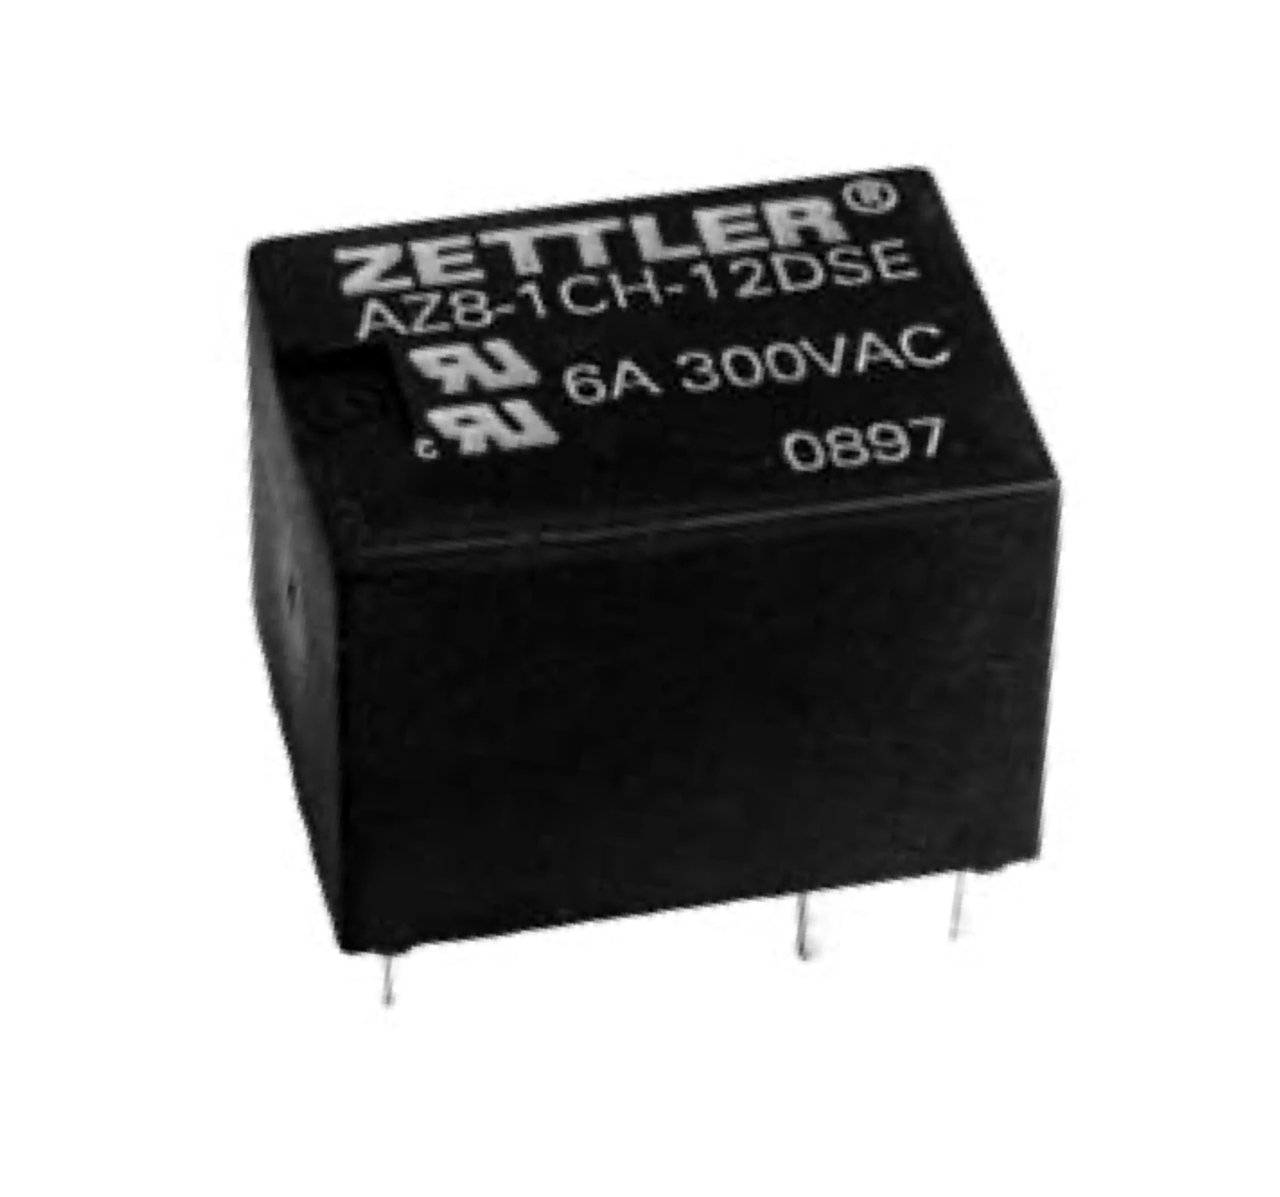 American Zettler AZ8-1CH-6DSA Power Relay